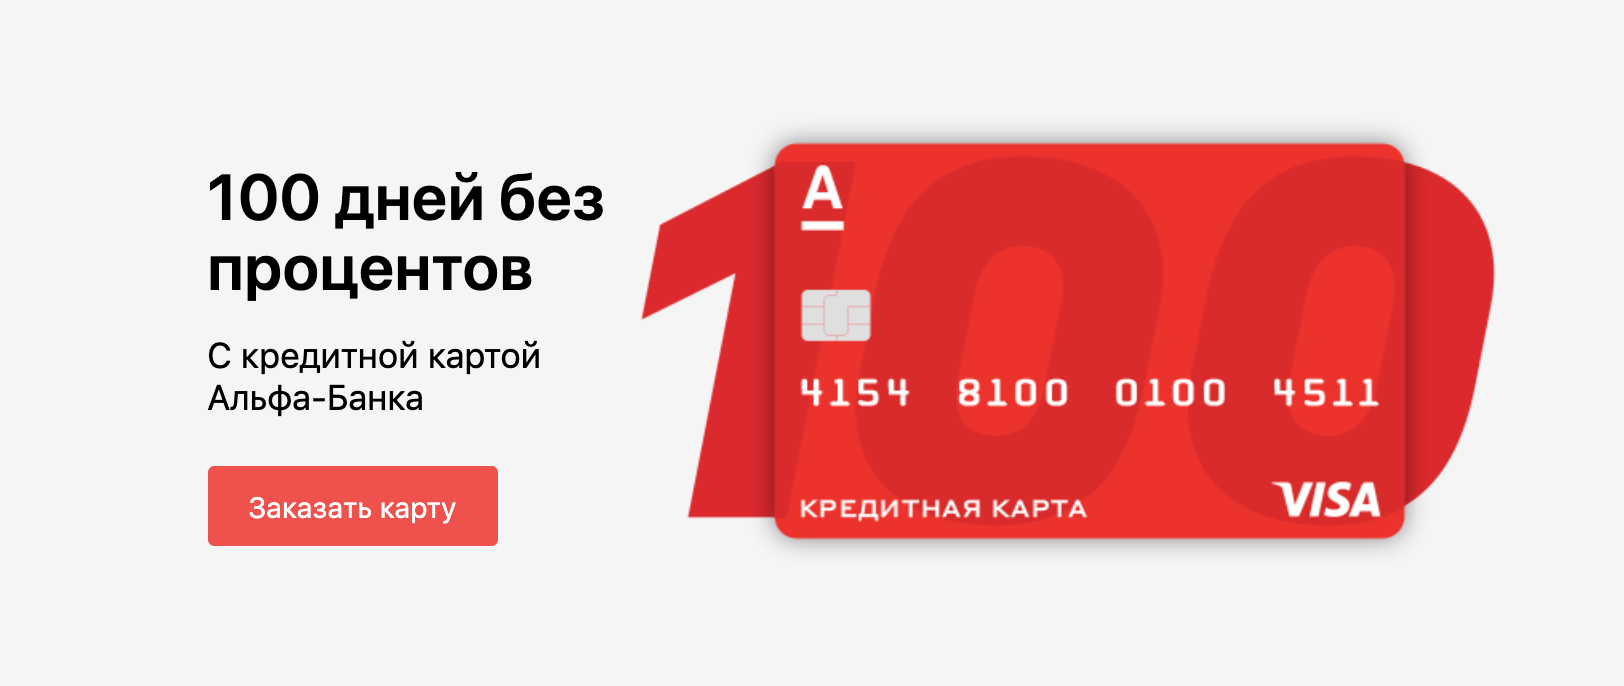 Кредитная карта 100 дней gold под 11.99% в российских рублях банка альфа-банк | банки.ру